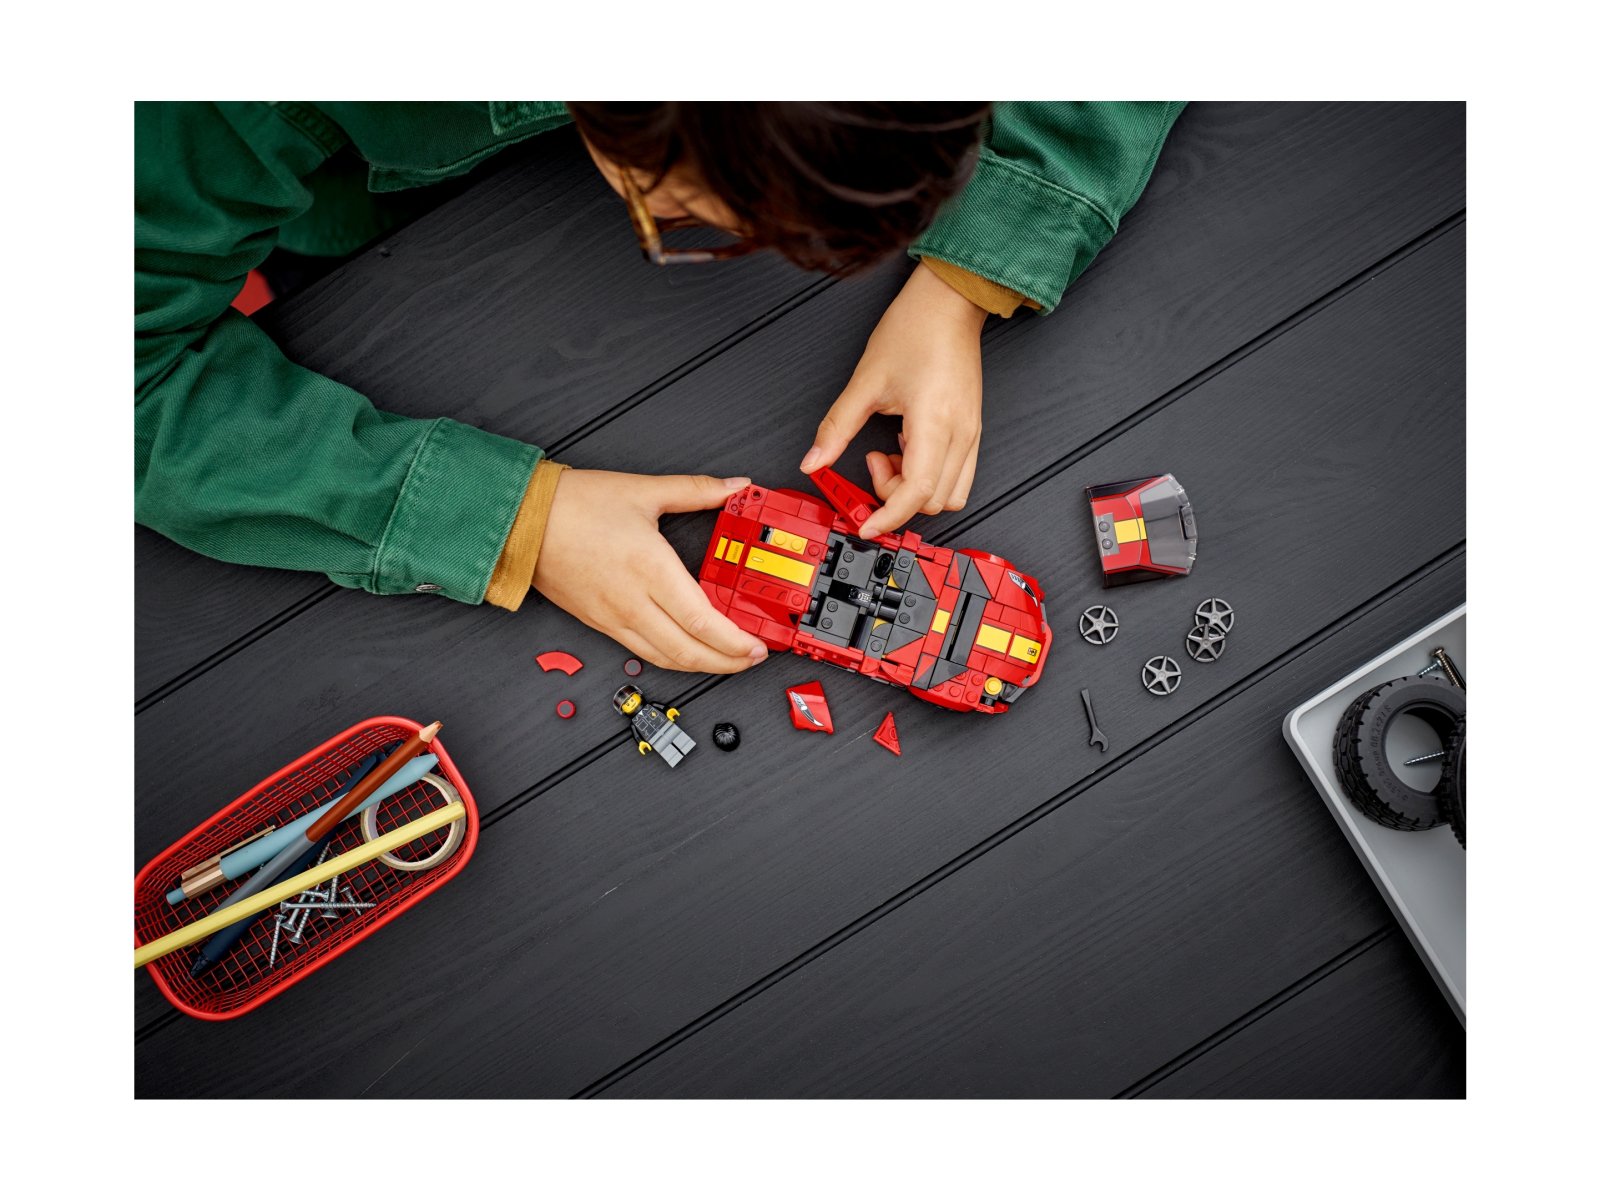 LEGO 76914 Ferrari 812 Competizione